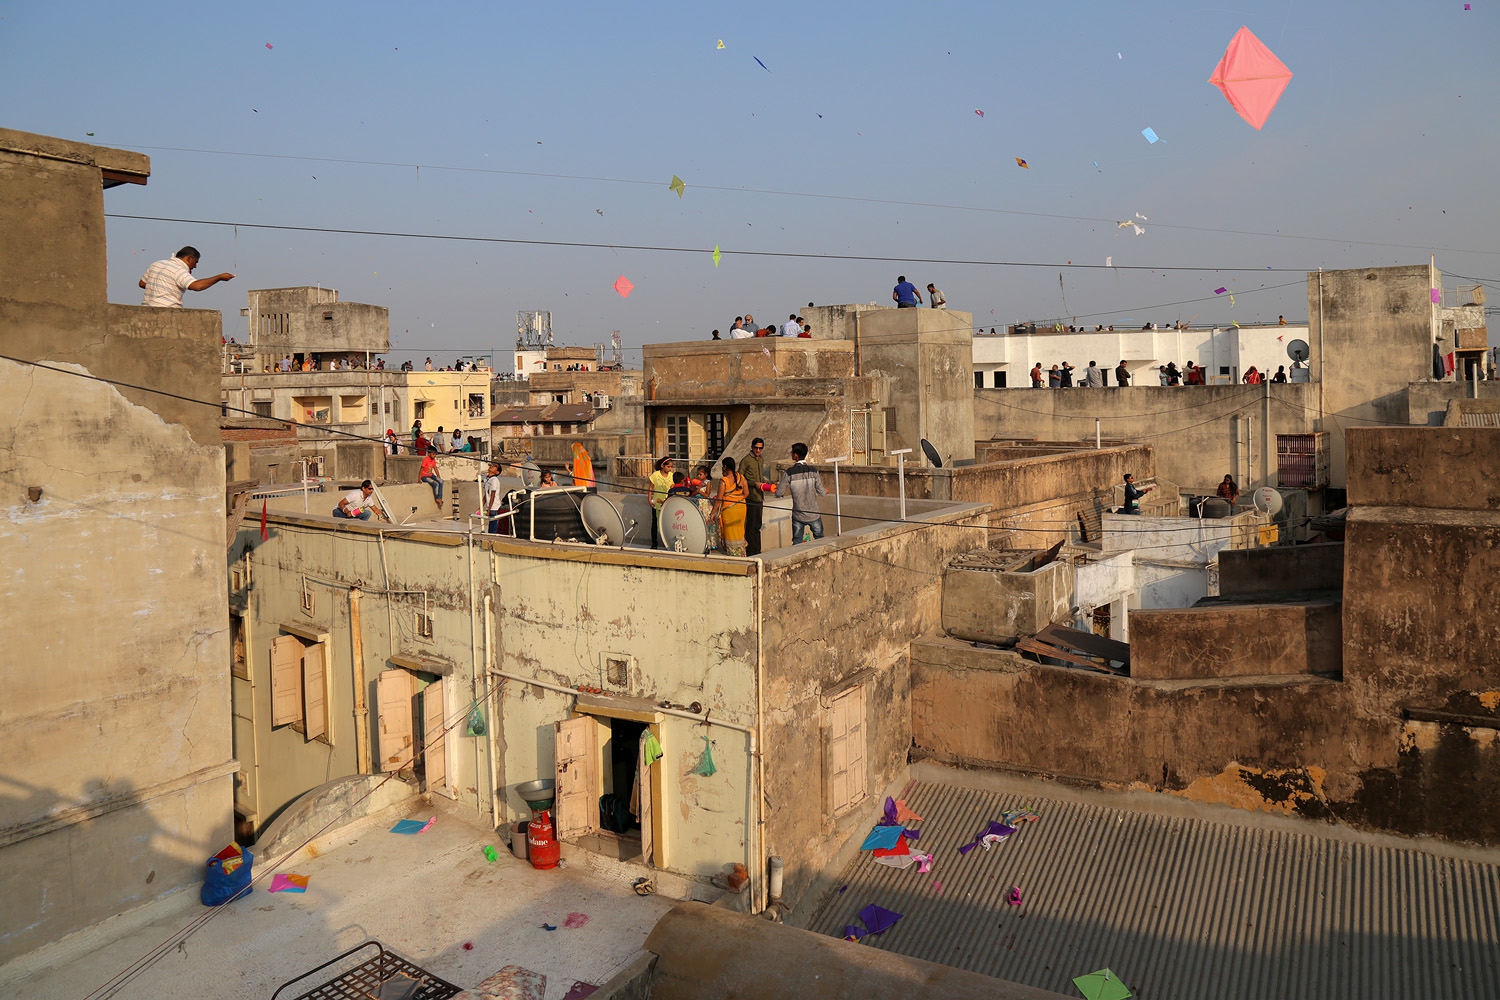 bill-hocker-kite-festival-ahmedabad-india-2018